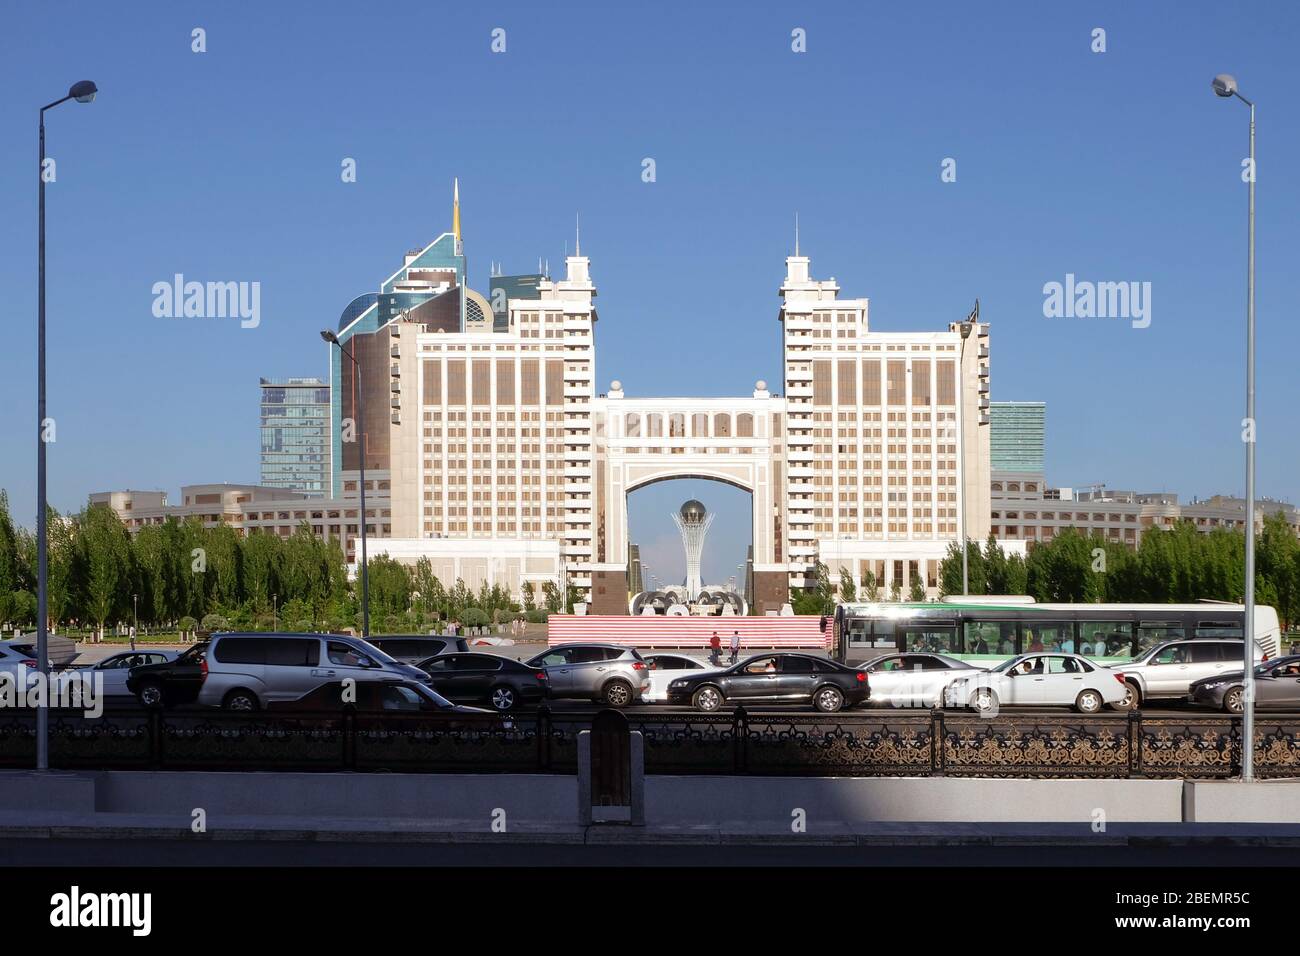 NUR-SULTAN, ASTANA, KAZAKHSTAN - 3 JUIN 2015 : KazMunayGas, la société pétrolière et gazière de l'État. Embouteillages, voitures et bus sur la route, les gens autour Banque D'Images